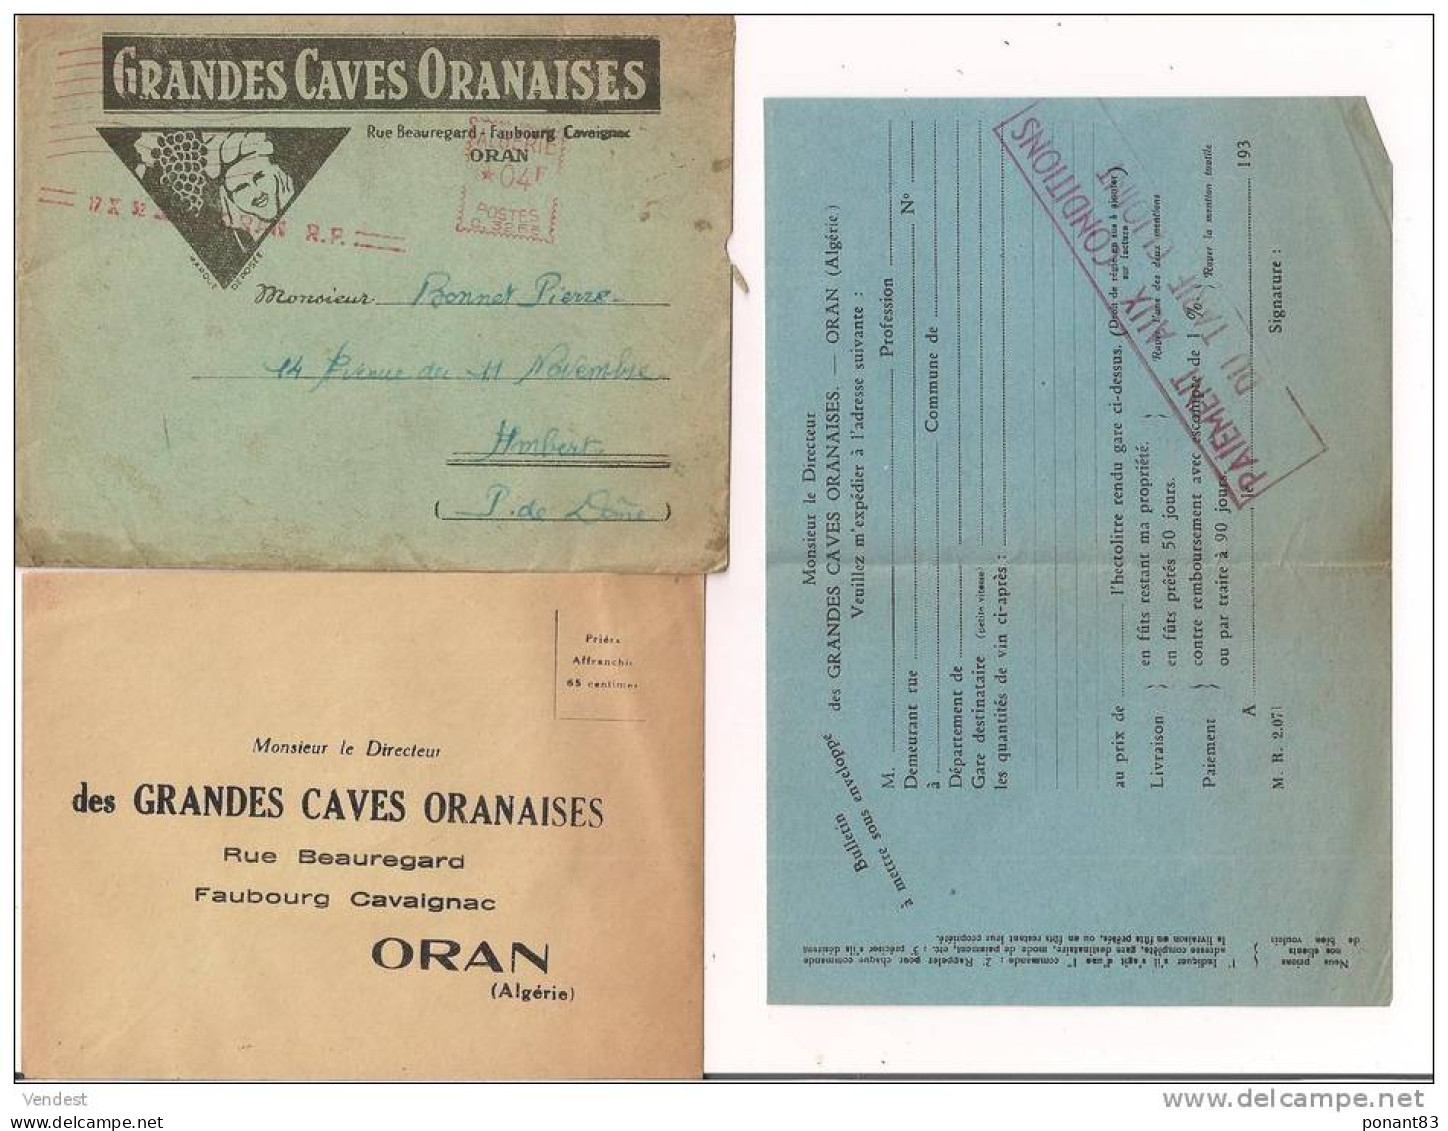 Algérie: Grandes Caves Oranaises: Publcité Complète: Enveloppe EMA, Lettre 30.09.1952, Tryptique Tarif, BdeC ... - Alcolici